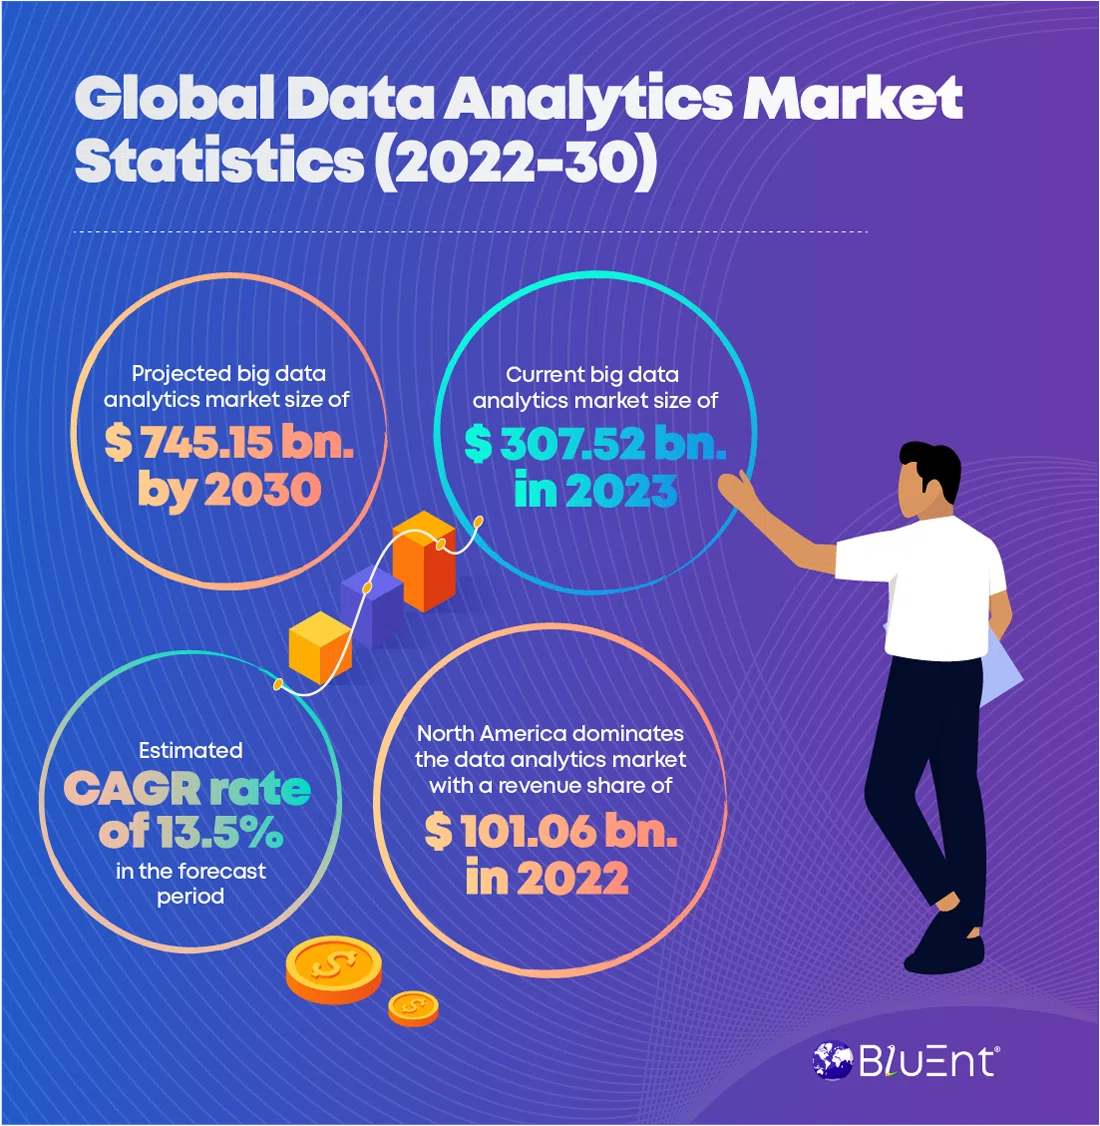 Latest market stats on data analytics types